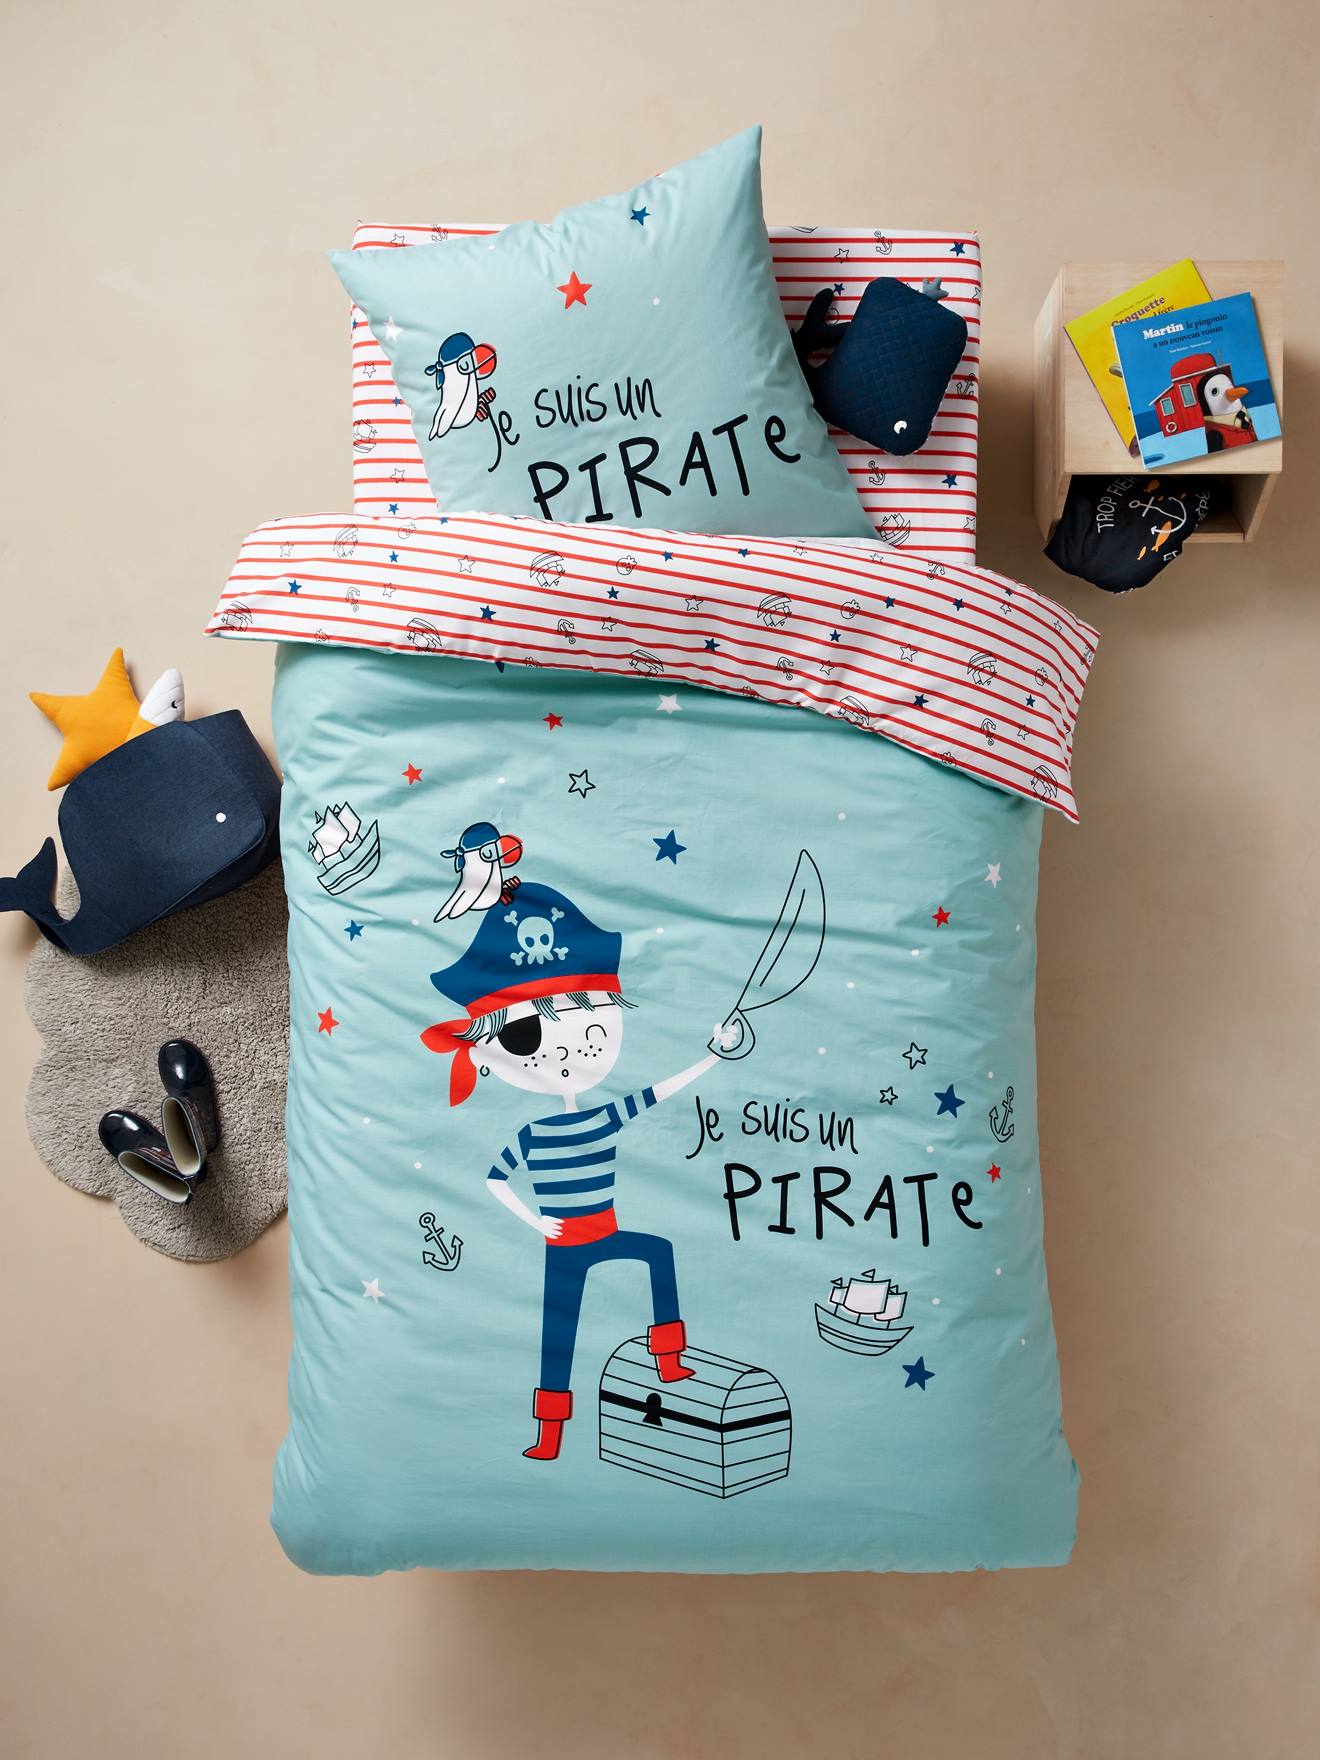 Duvet Cover Pillowcase Set For Children Pirate Theme Blue